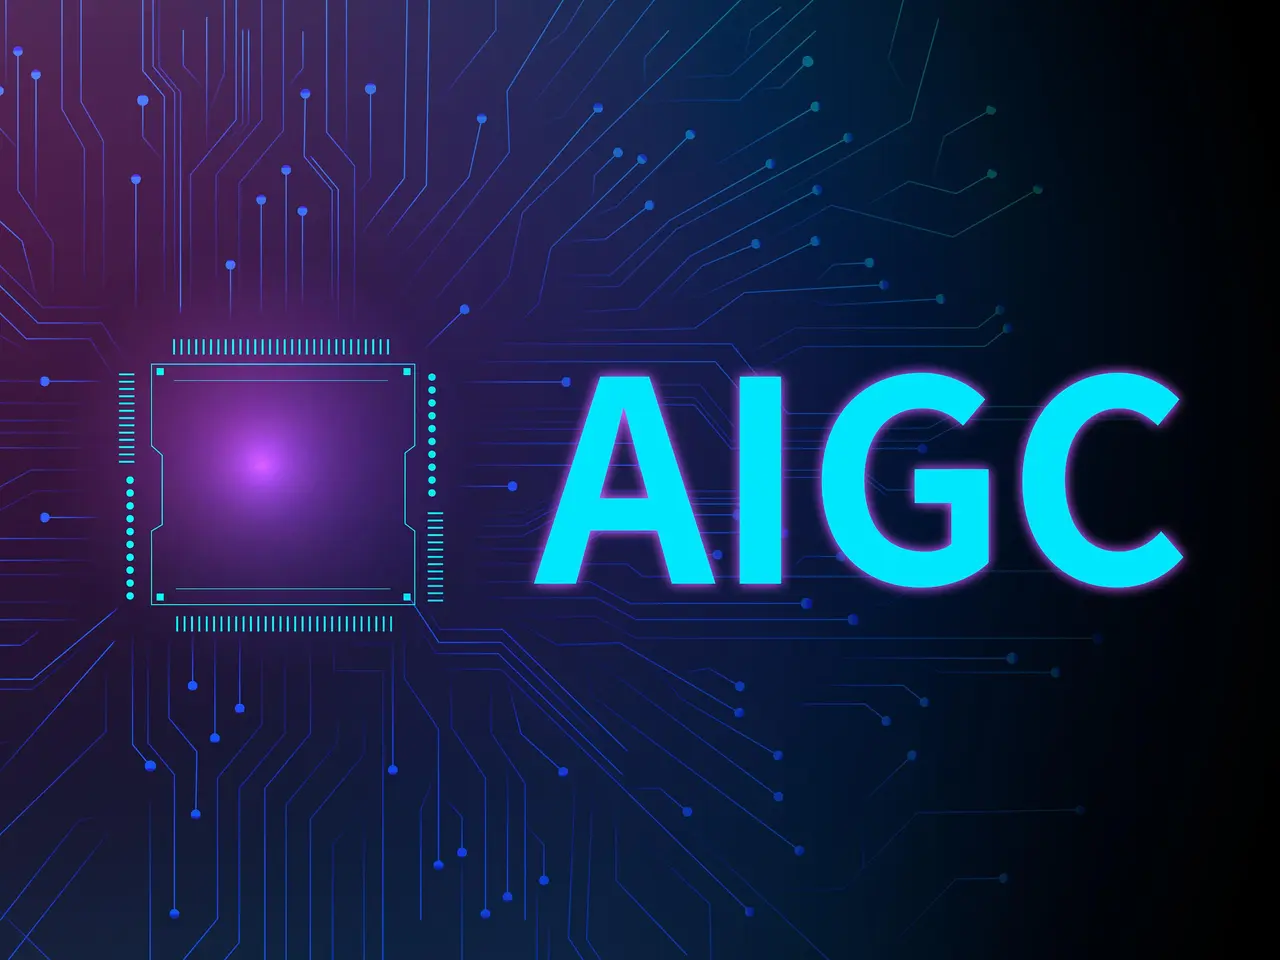 这是一张展示电路板和中央处理器图案的图片，上面有蓝色发光的“AIGC”字样，背景是深色调。